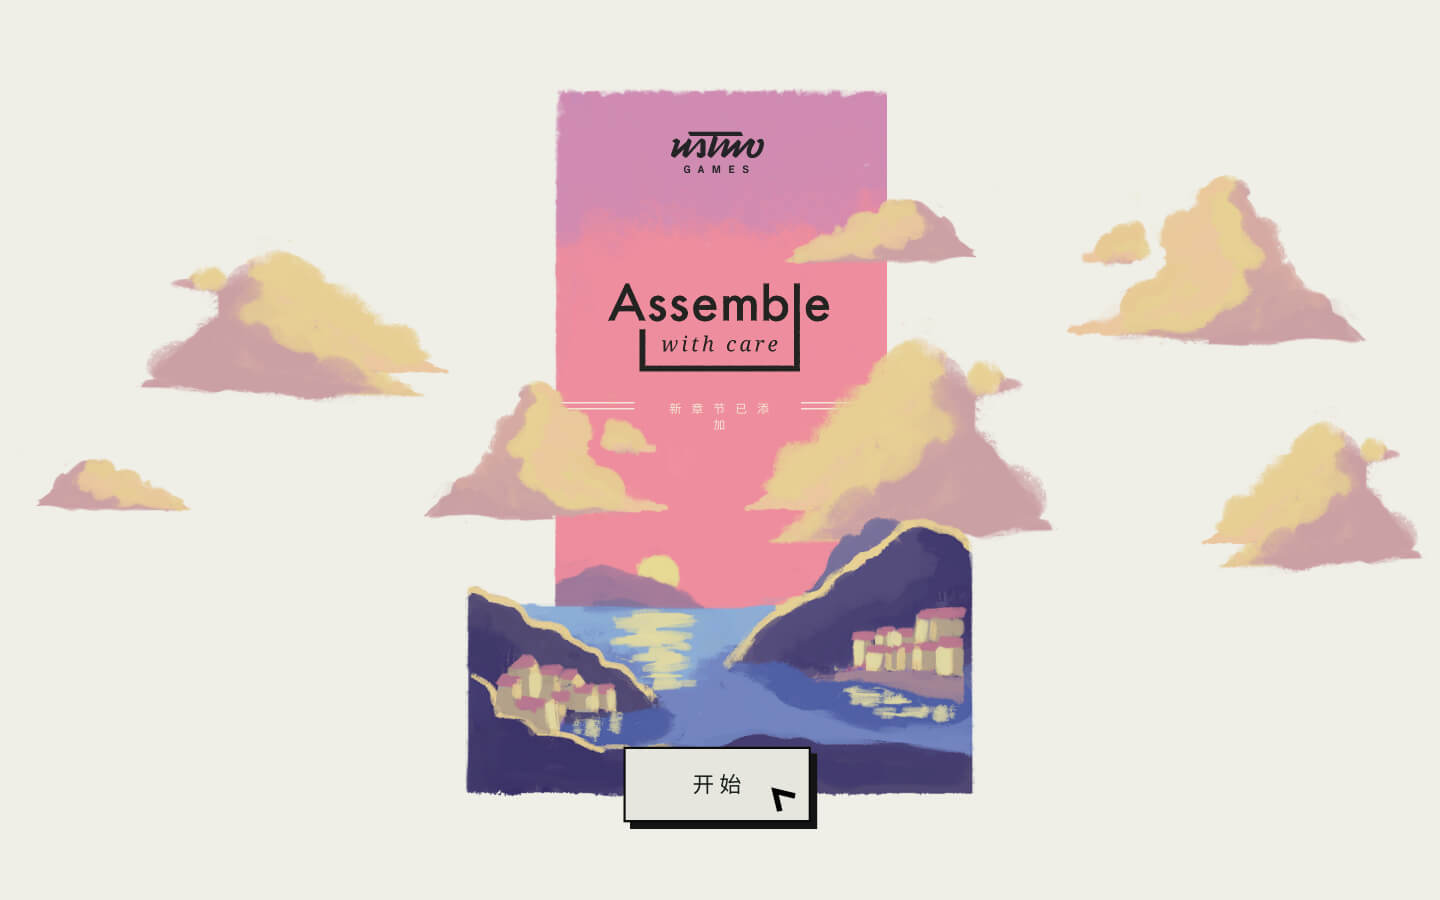 用心组装 for Mac v1.3.41 Assemble with Care 中文原生版 苹果电脑